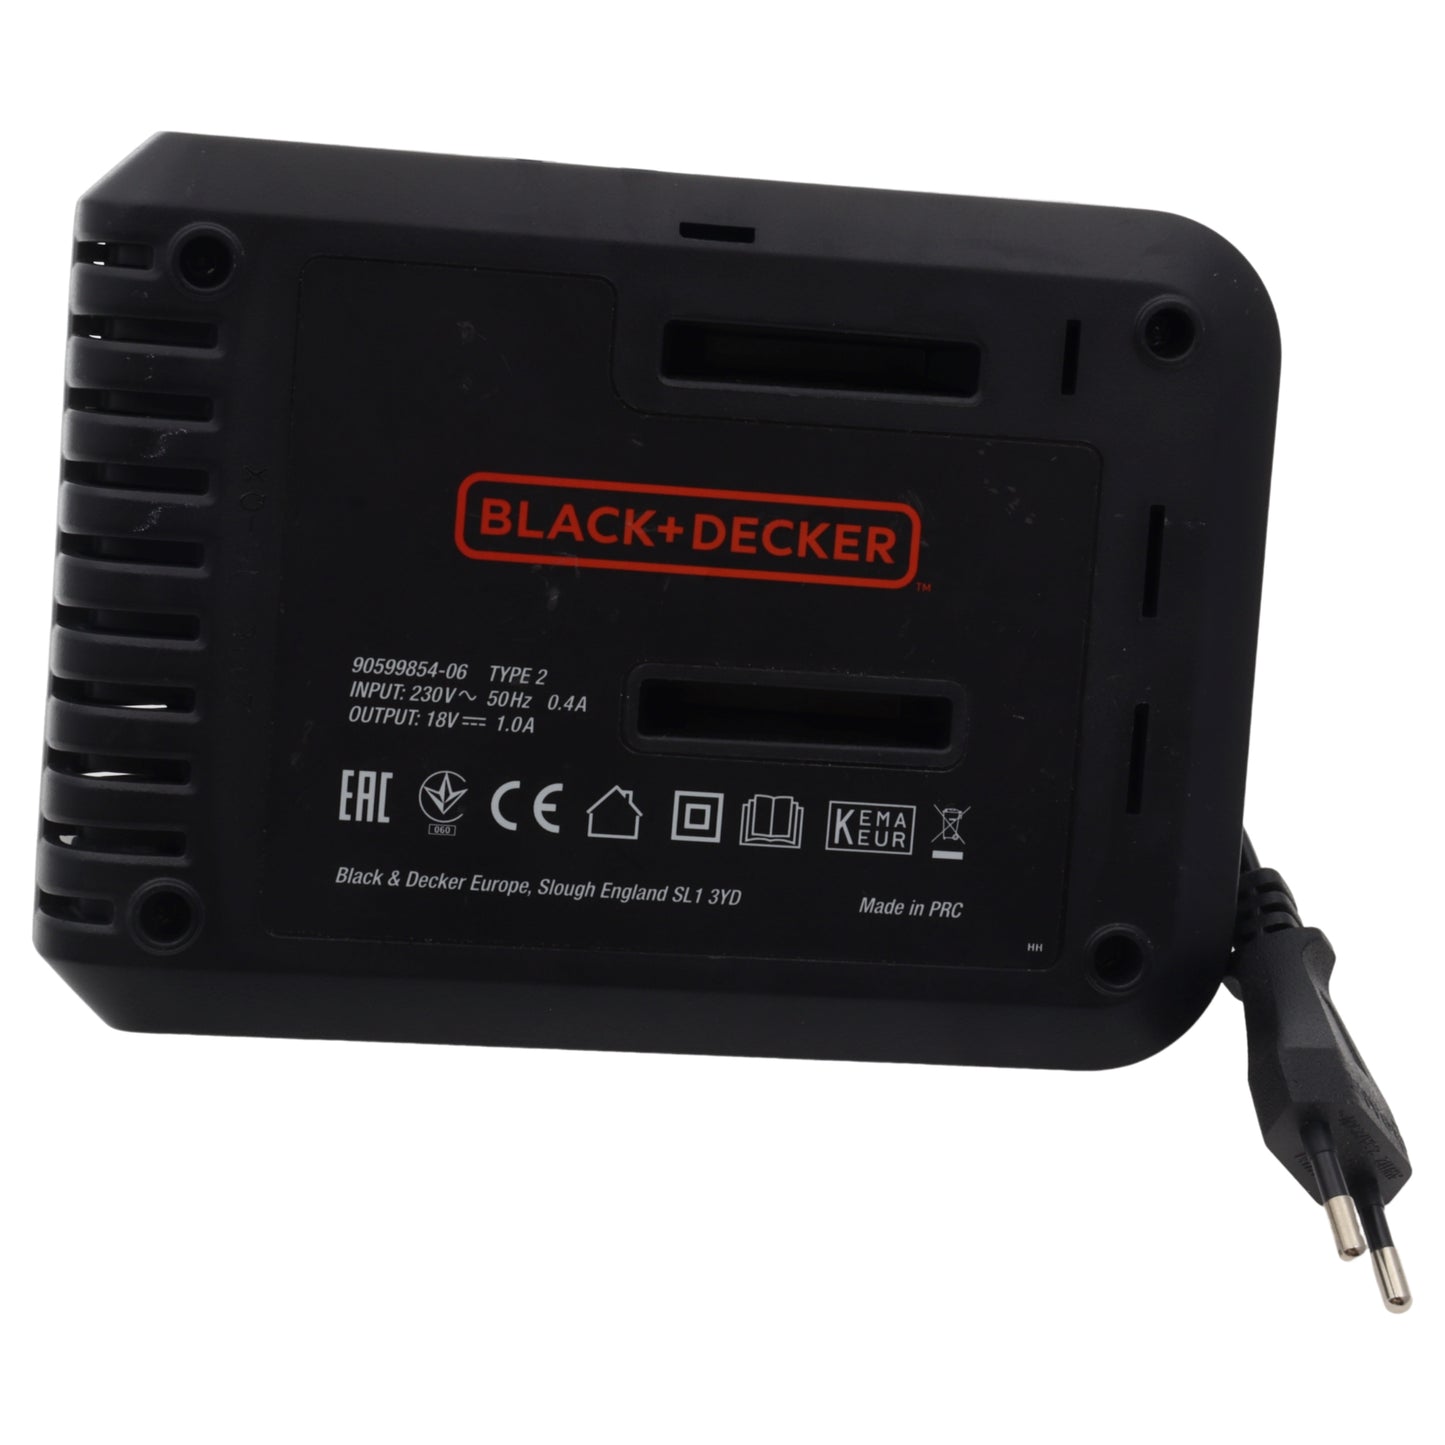 Black & Decker caricabatterie banco 10.8V 18V trapano smerigliatrice tagliabordi